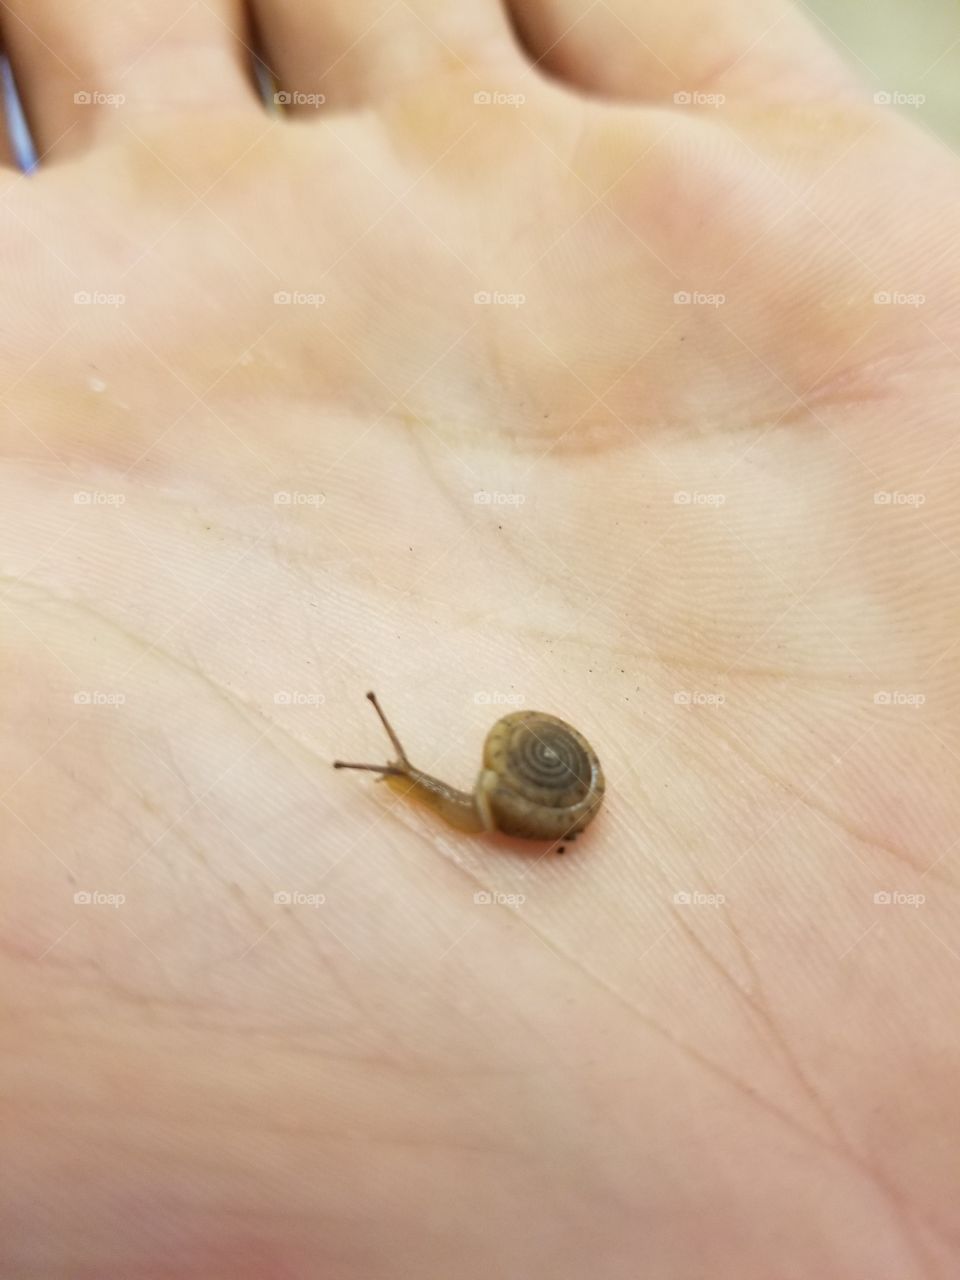 little snail friend